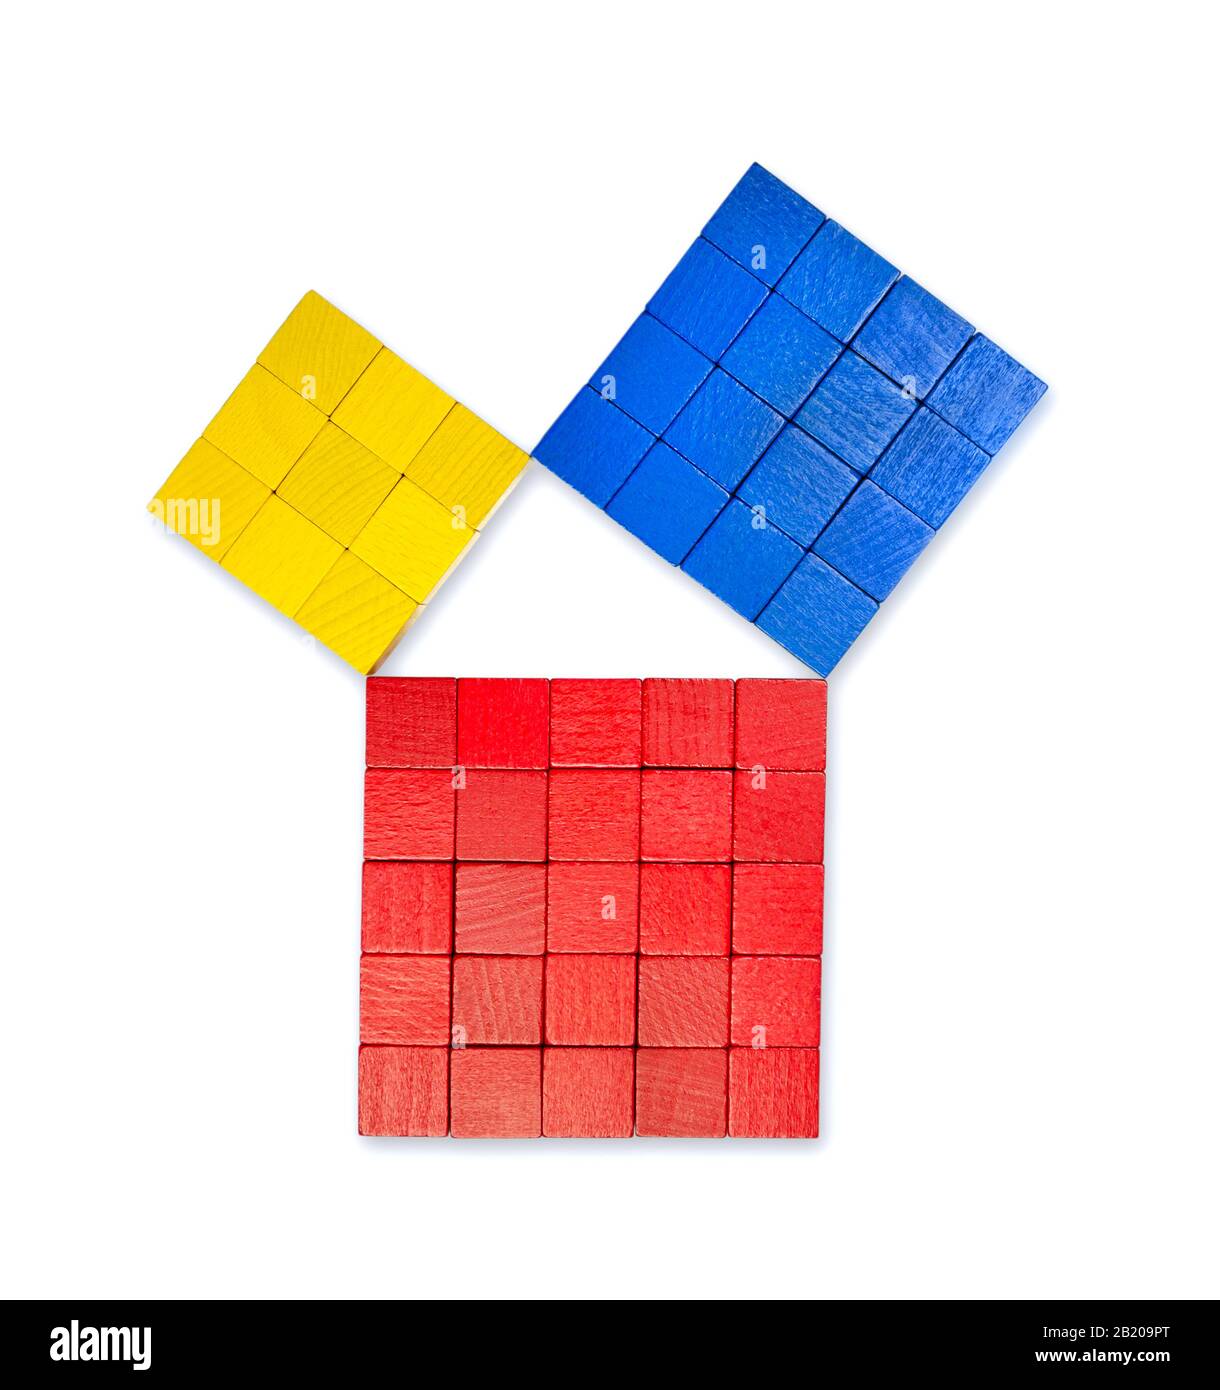 Théorème de Pythagorean montré avec des cubes en bois colorés, d'en haut. Théorème de Pythagore. Relation des côtés d'un triangle droit. Banque D'Images